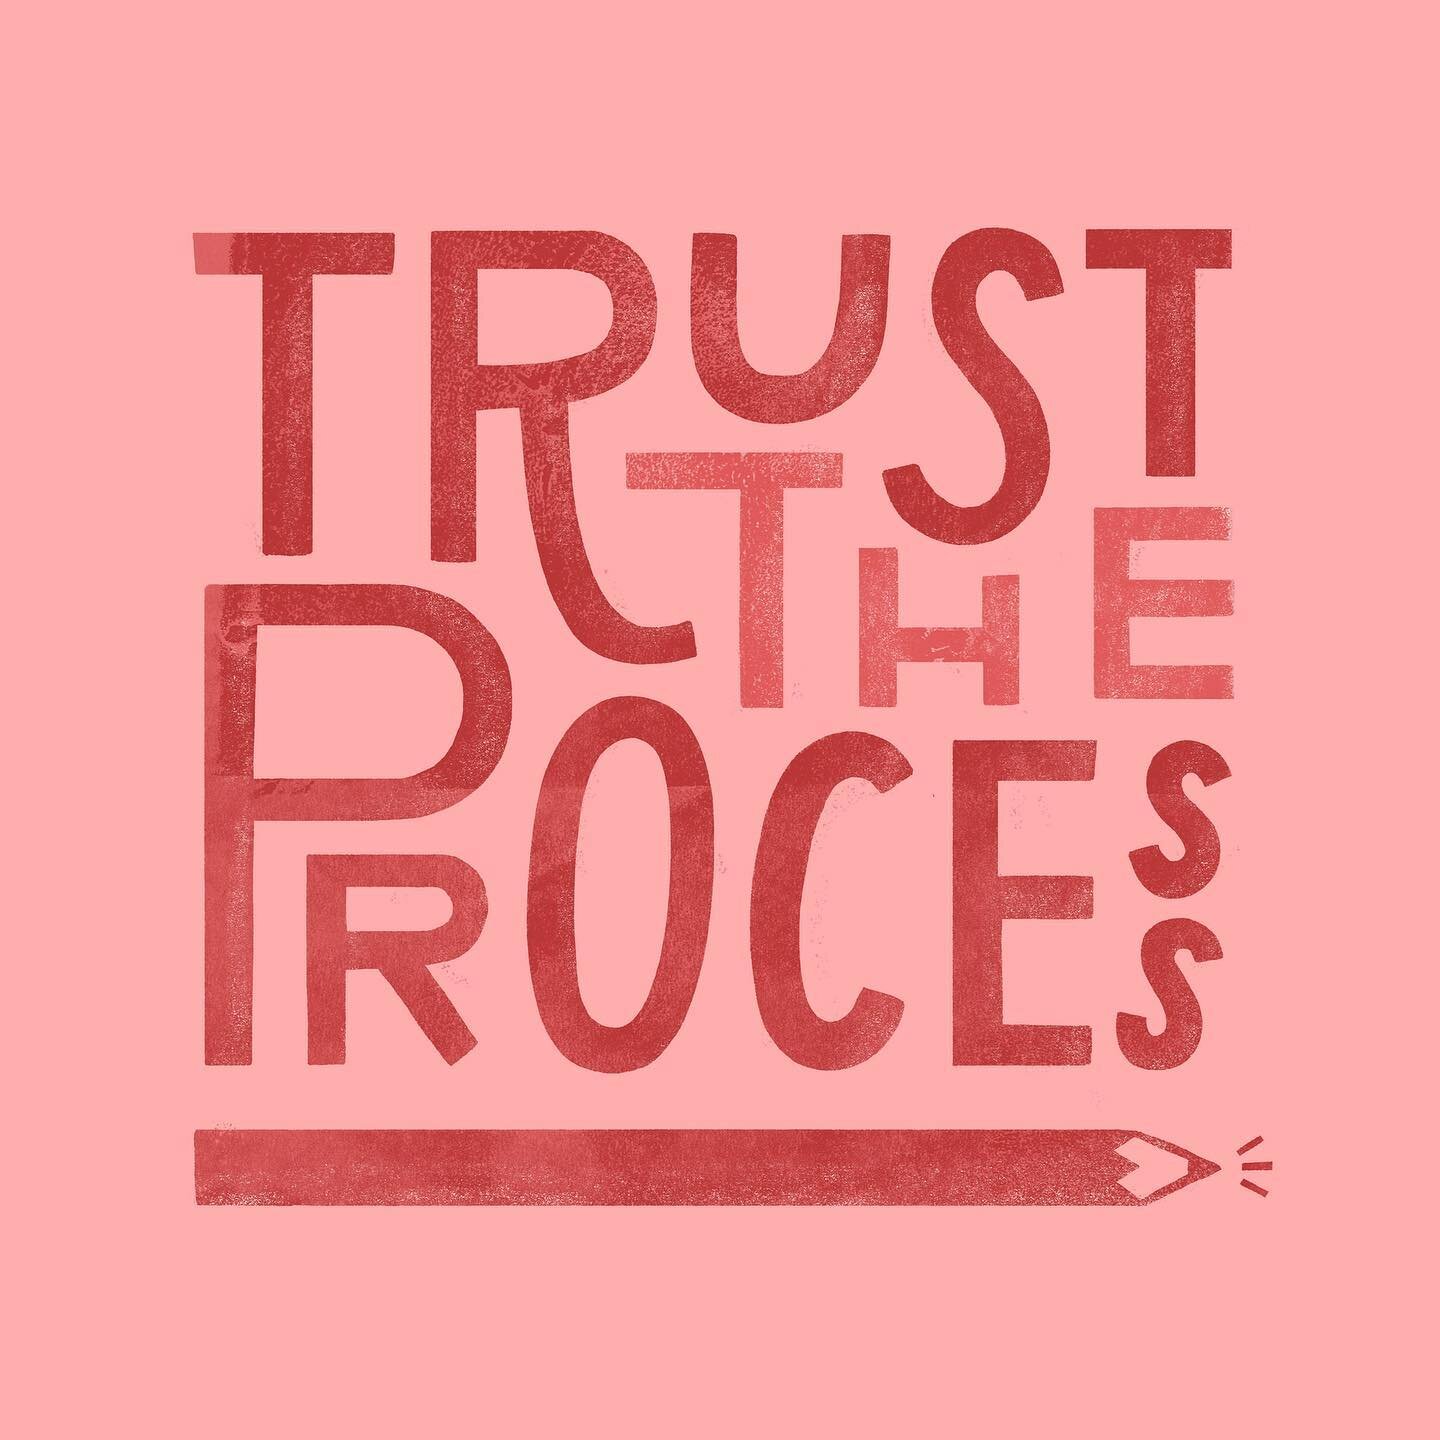 Trust trust trust ✨